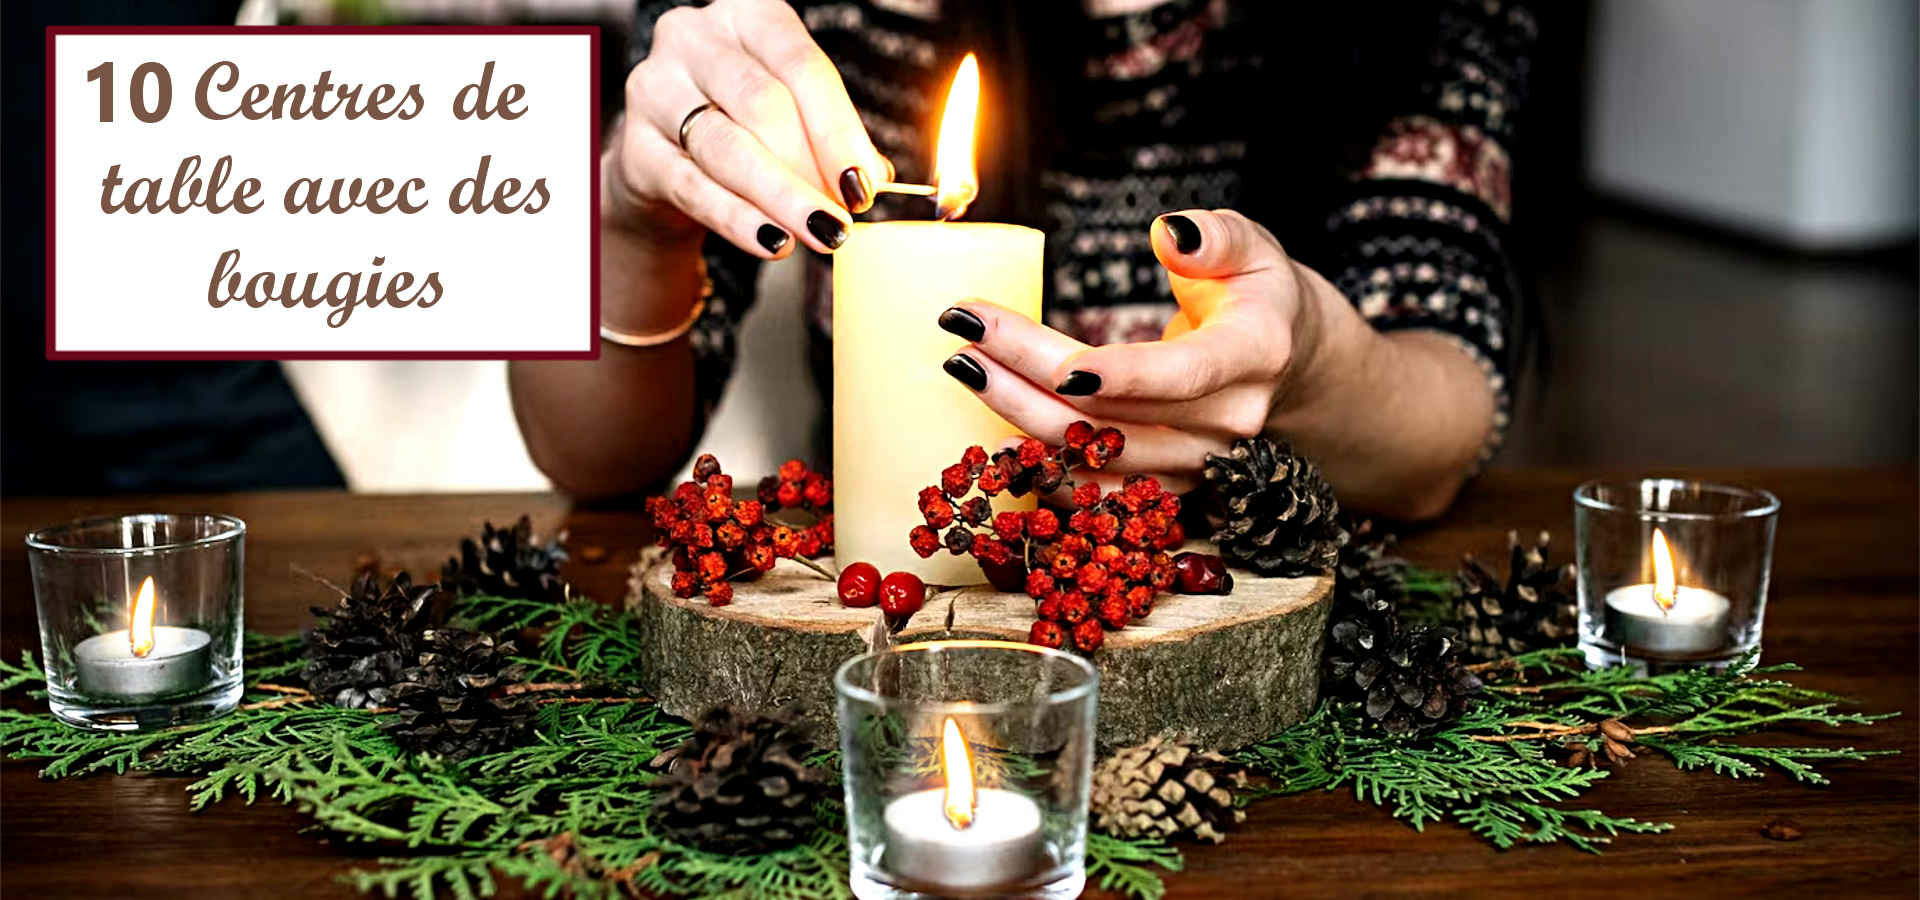 6 idées de centre de table à faire avec des bougies pour Noël